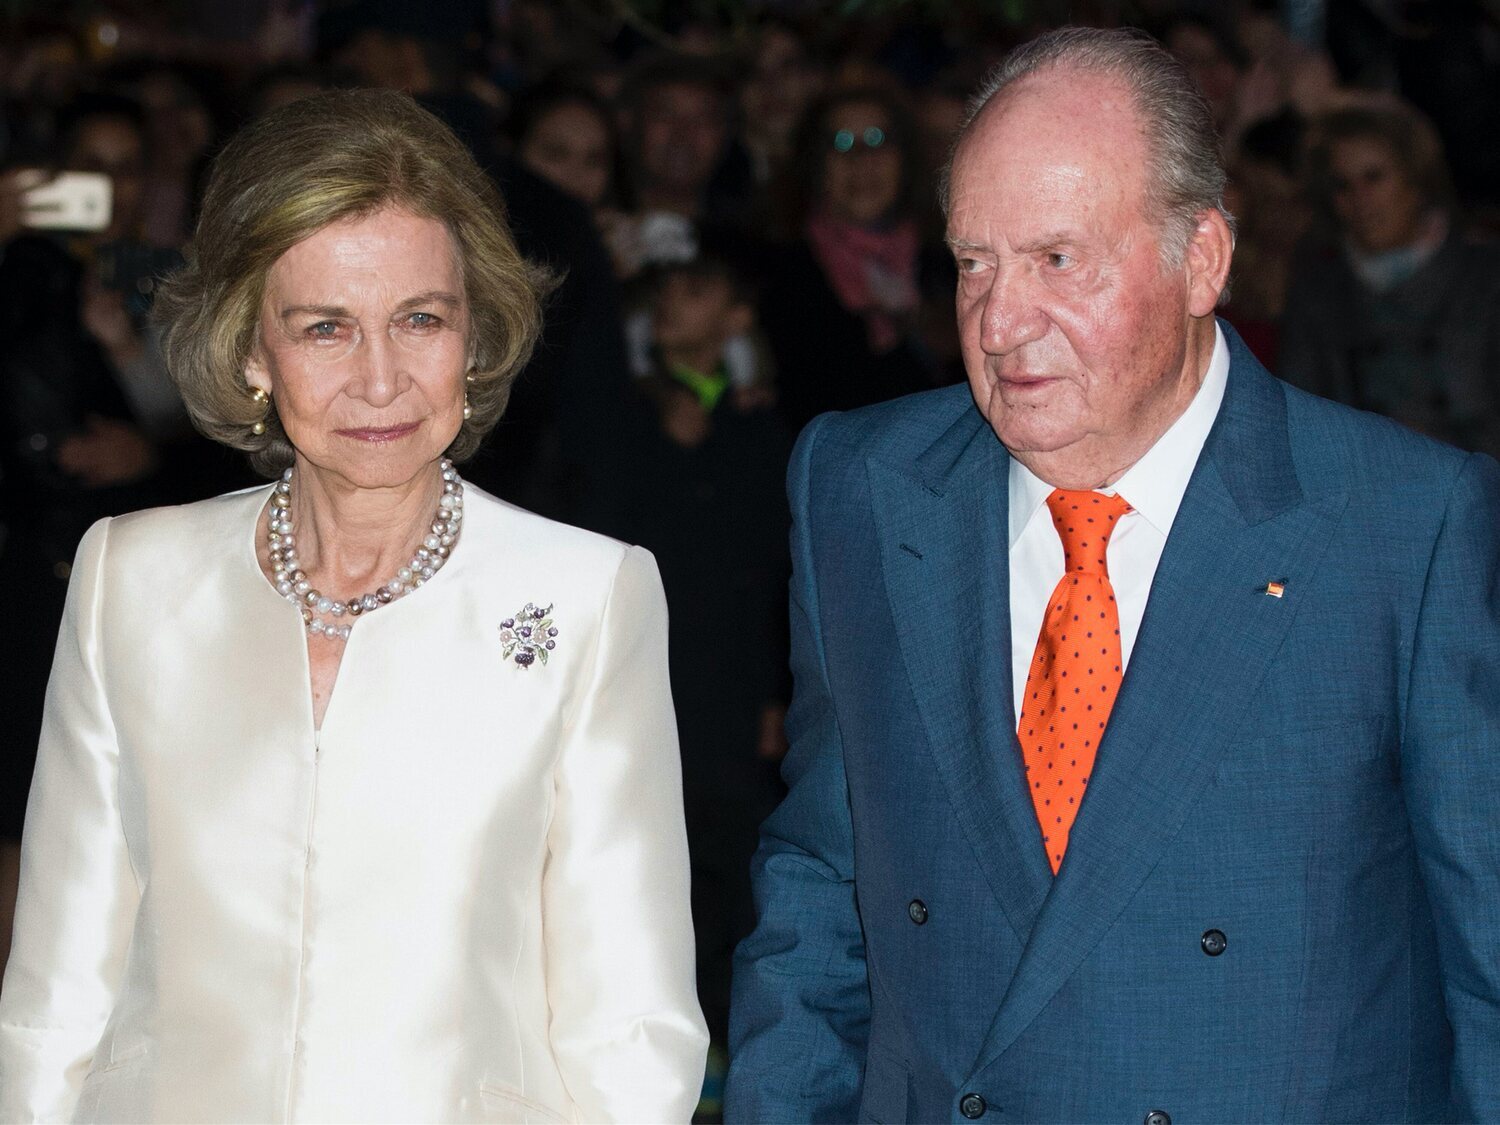 La reina Sofía habría recibido dinero de Juan Carlos I a través de una sociedad offshore